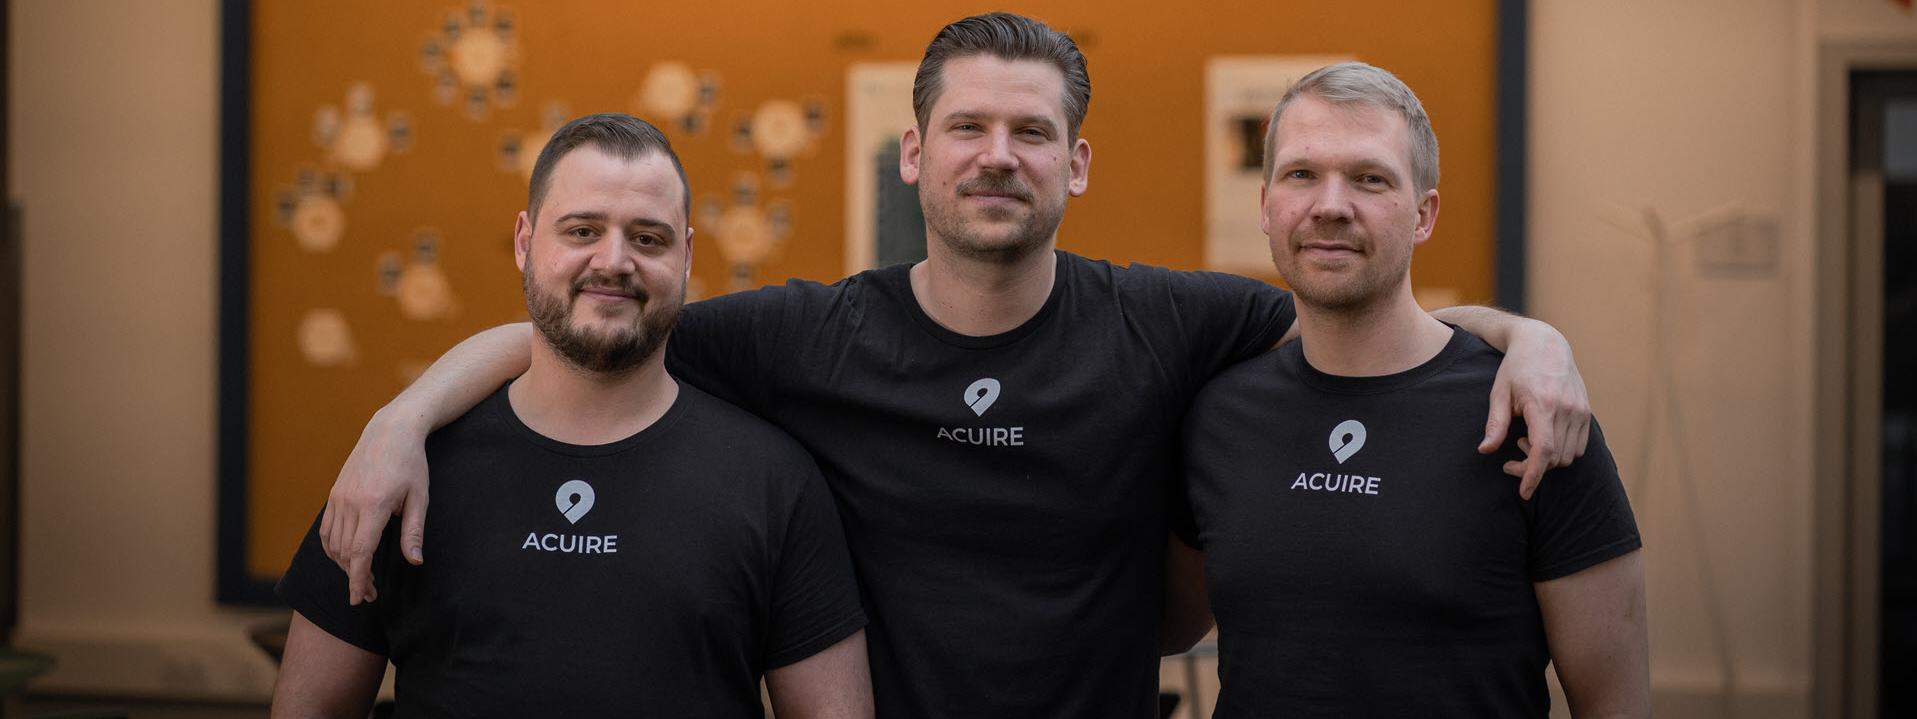 Team von Acuire: Fabian Göddert, Lukas Naumann, Michael Geigerhilk